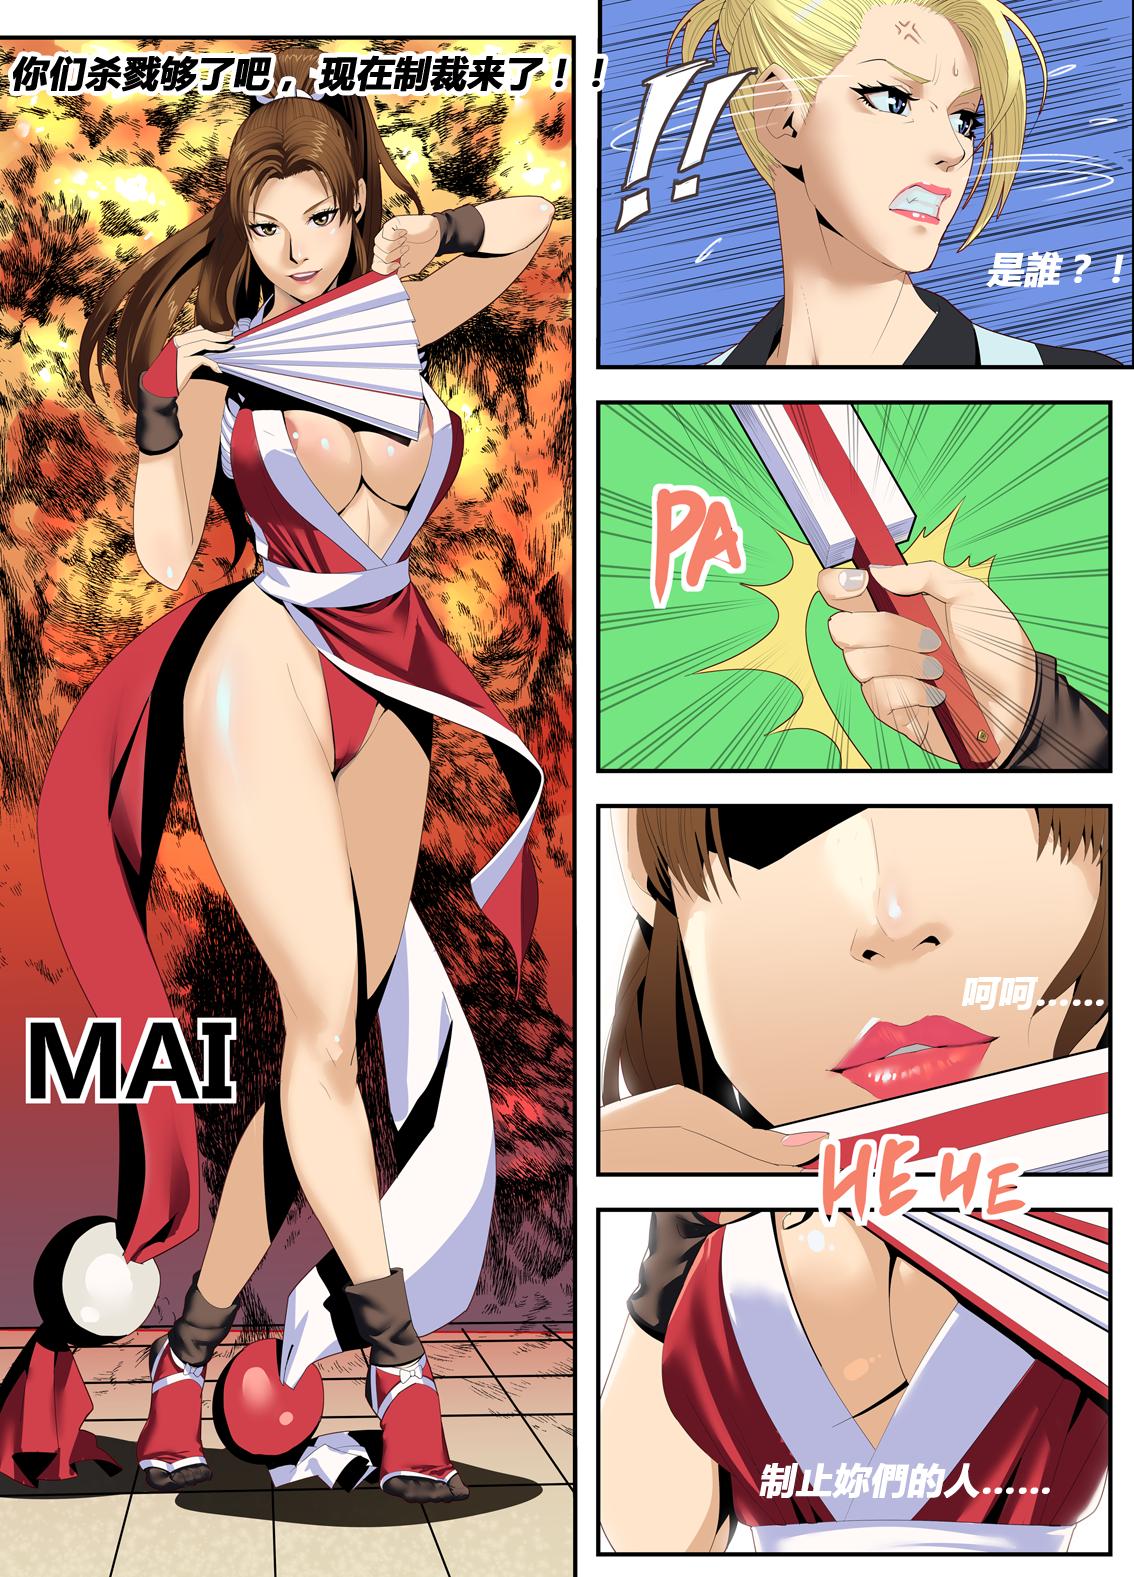 The Lust of Mai Shiranui 5